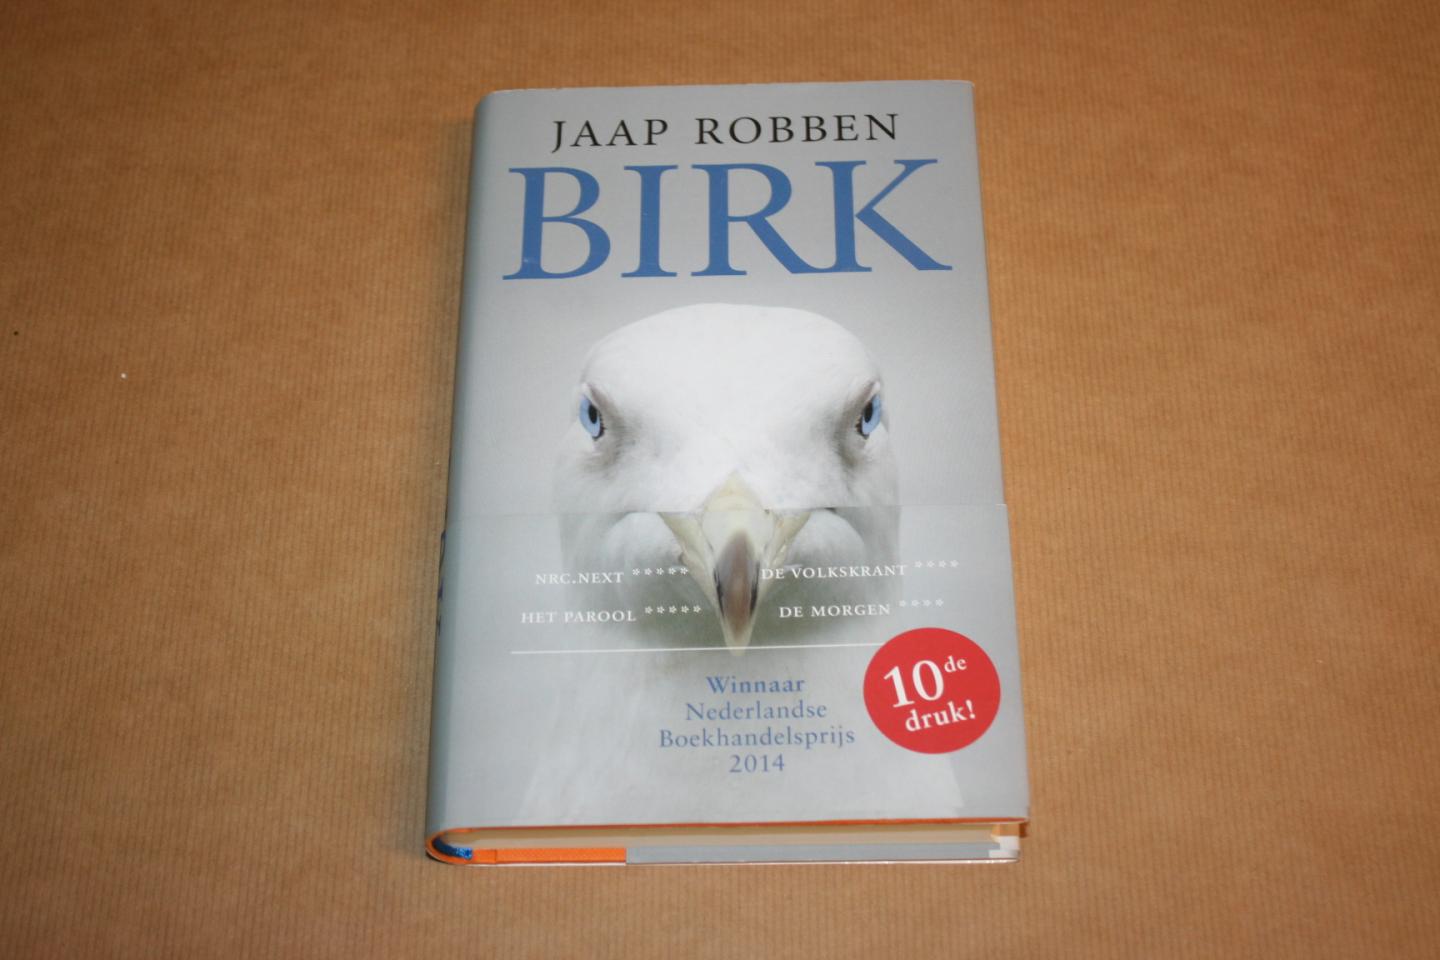 Jaap Robben - Birk